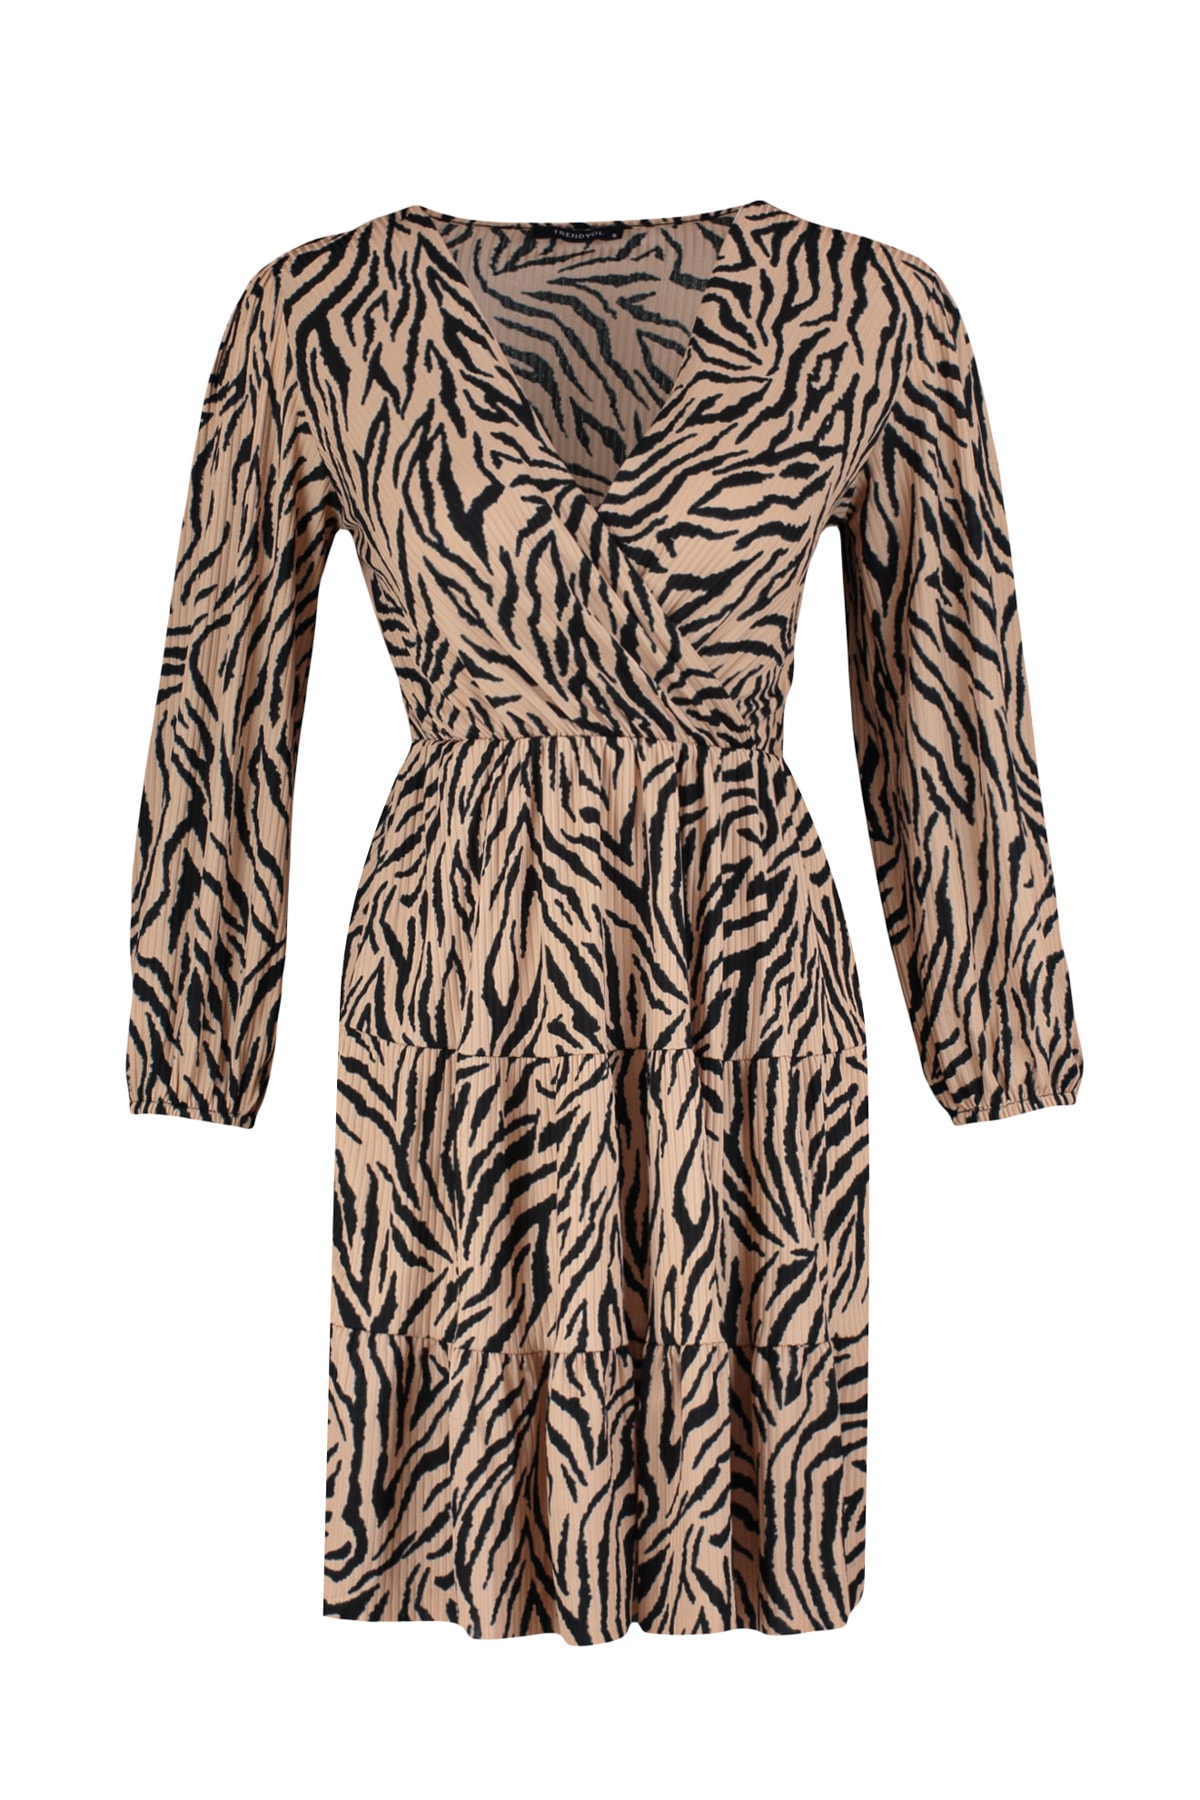 TRENDYOLMİLLA Kahverengi Zebra Desenli Kruvaze Yaka Mini Esnek Örme Elbise TWOAW22EL0104 RF10706